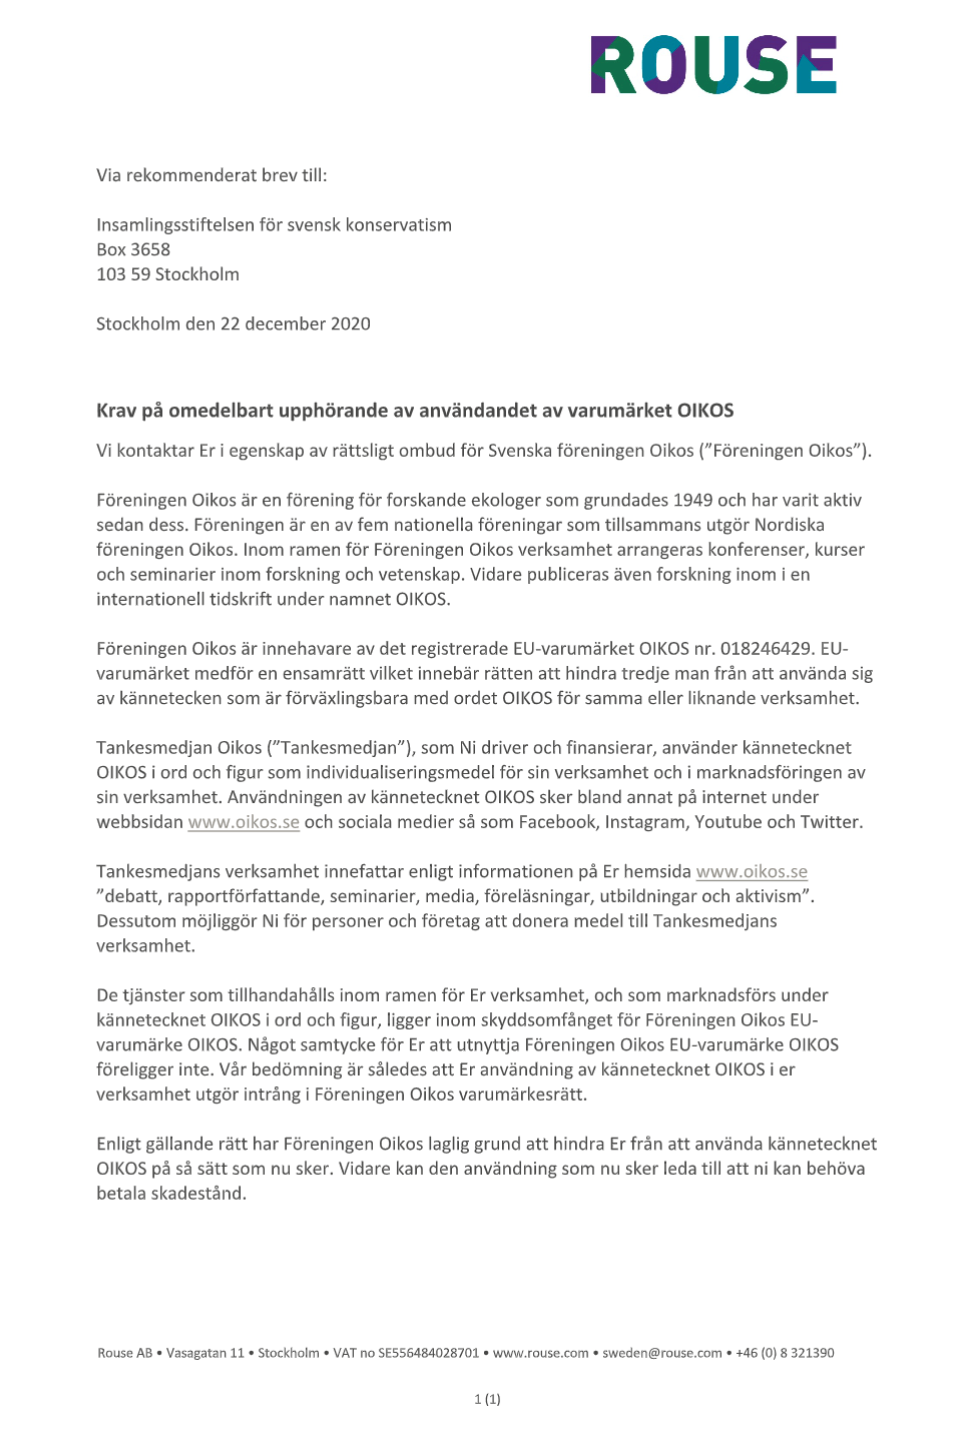 Forskarnätverket Oikos har skickat Karlsson ett ”Krav på omedelbart upphörande av användandet av varumärket Oikos”.